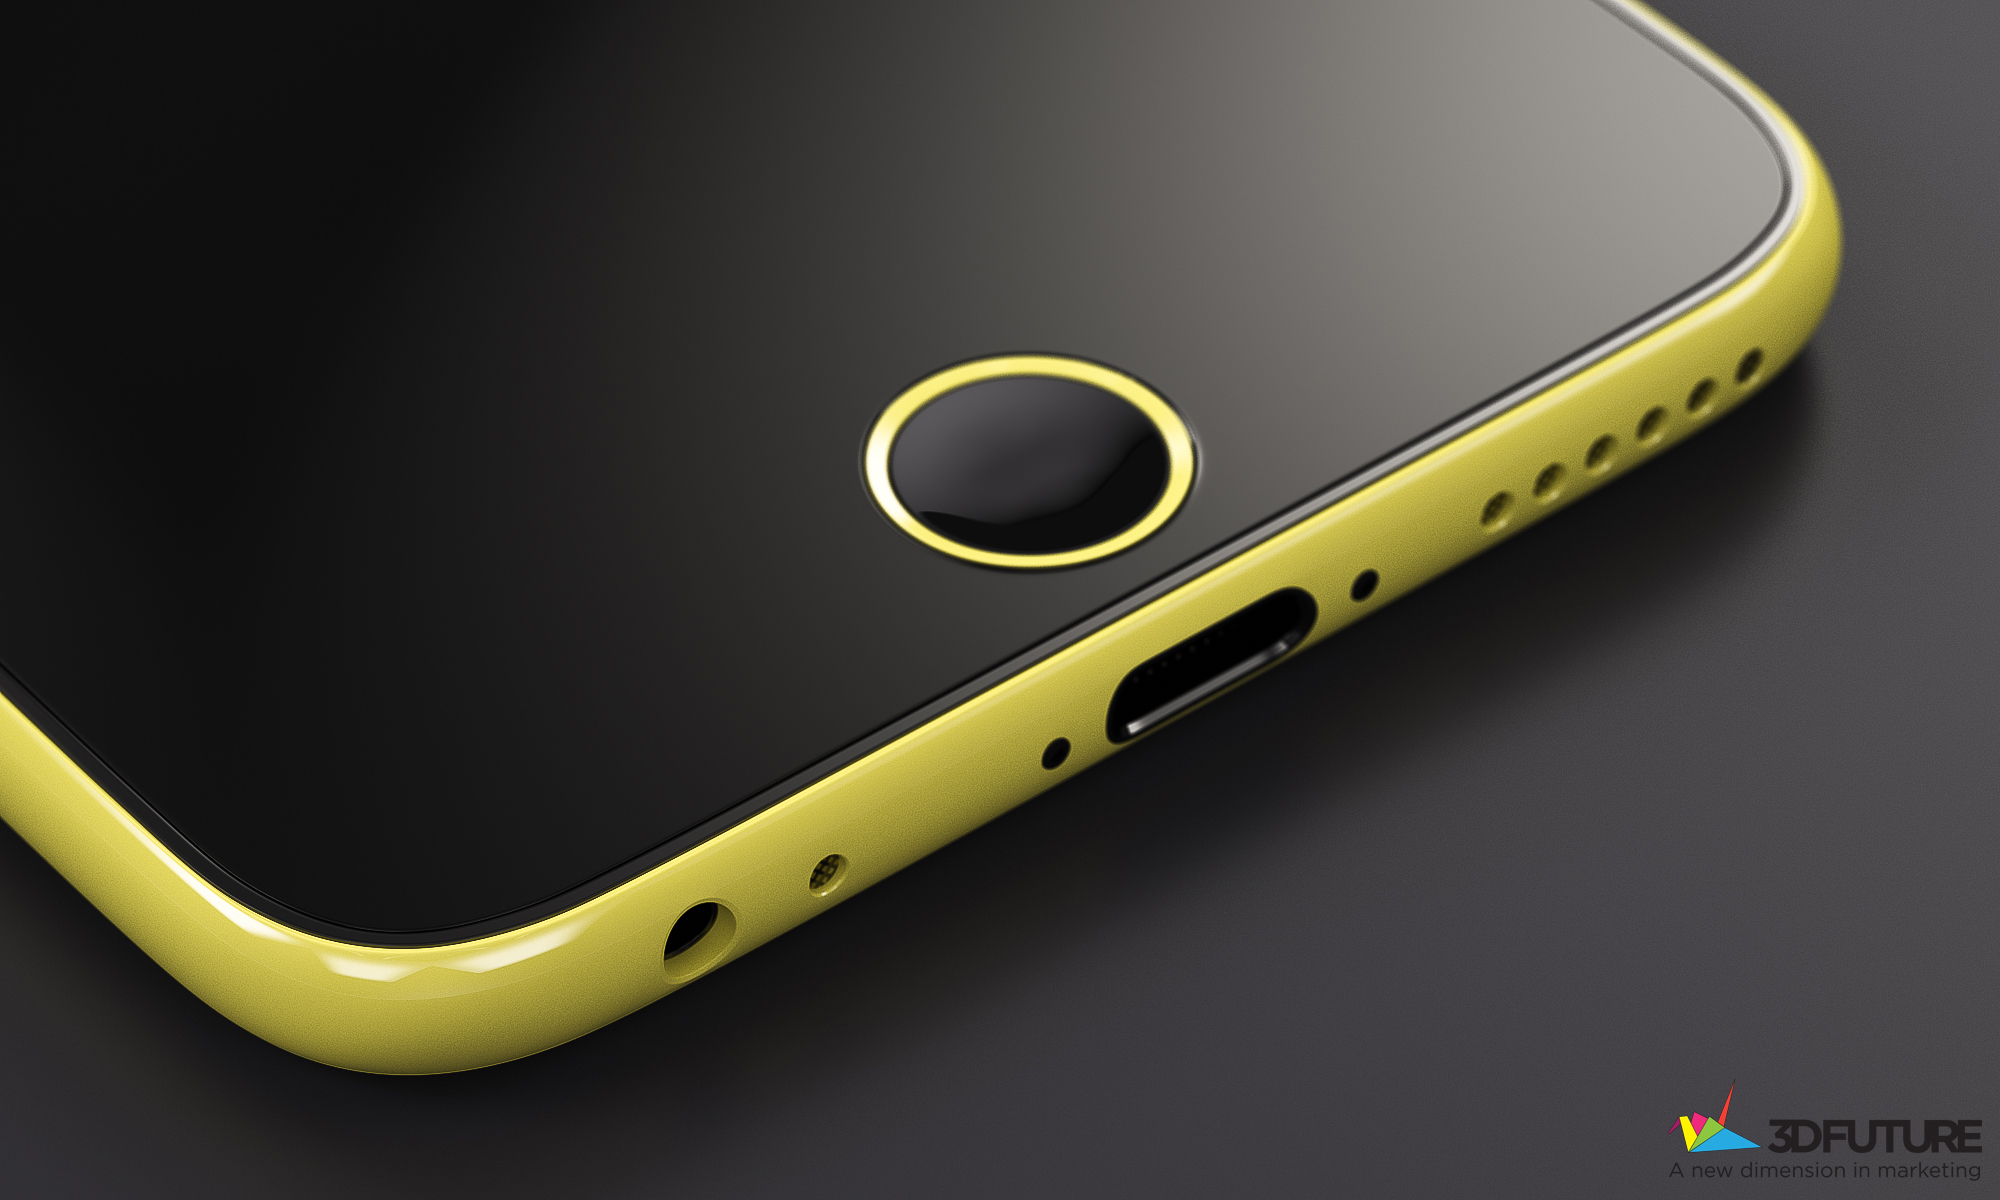 iPhone-6c-concept-3D-Future-004